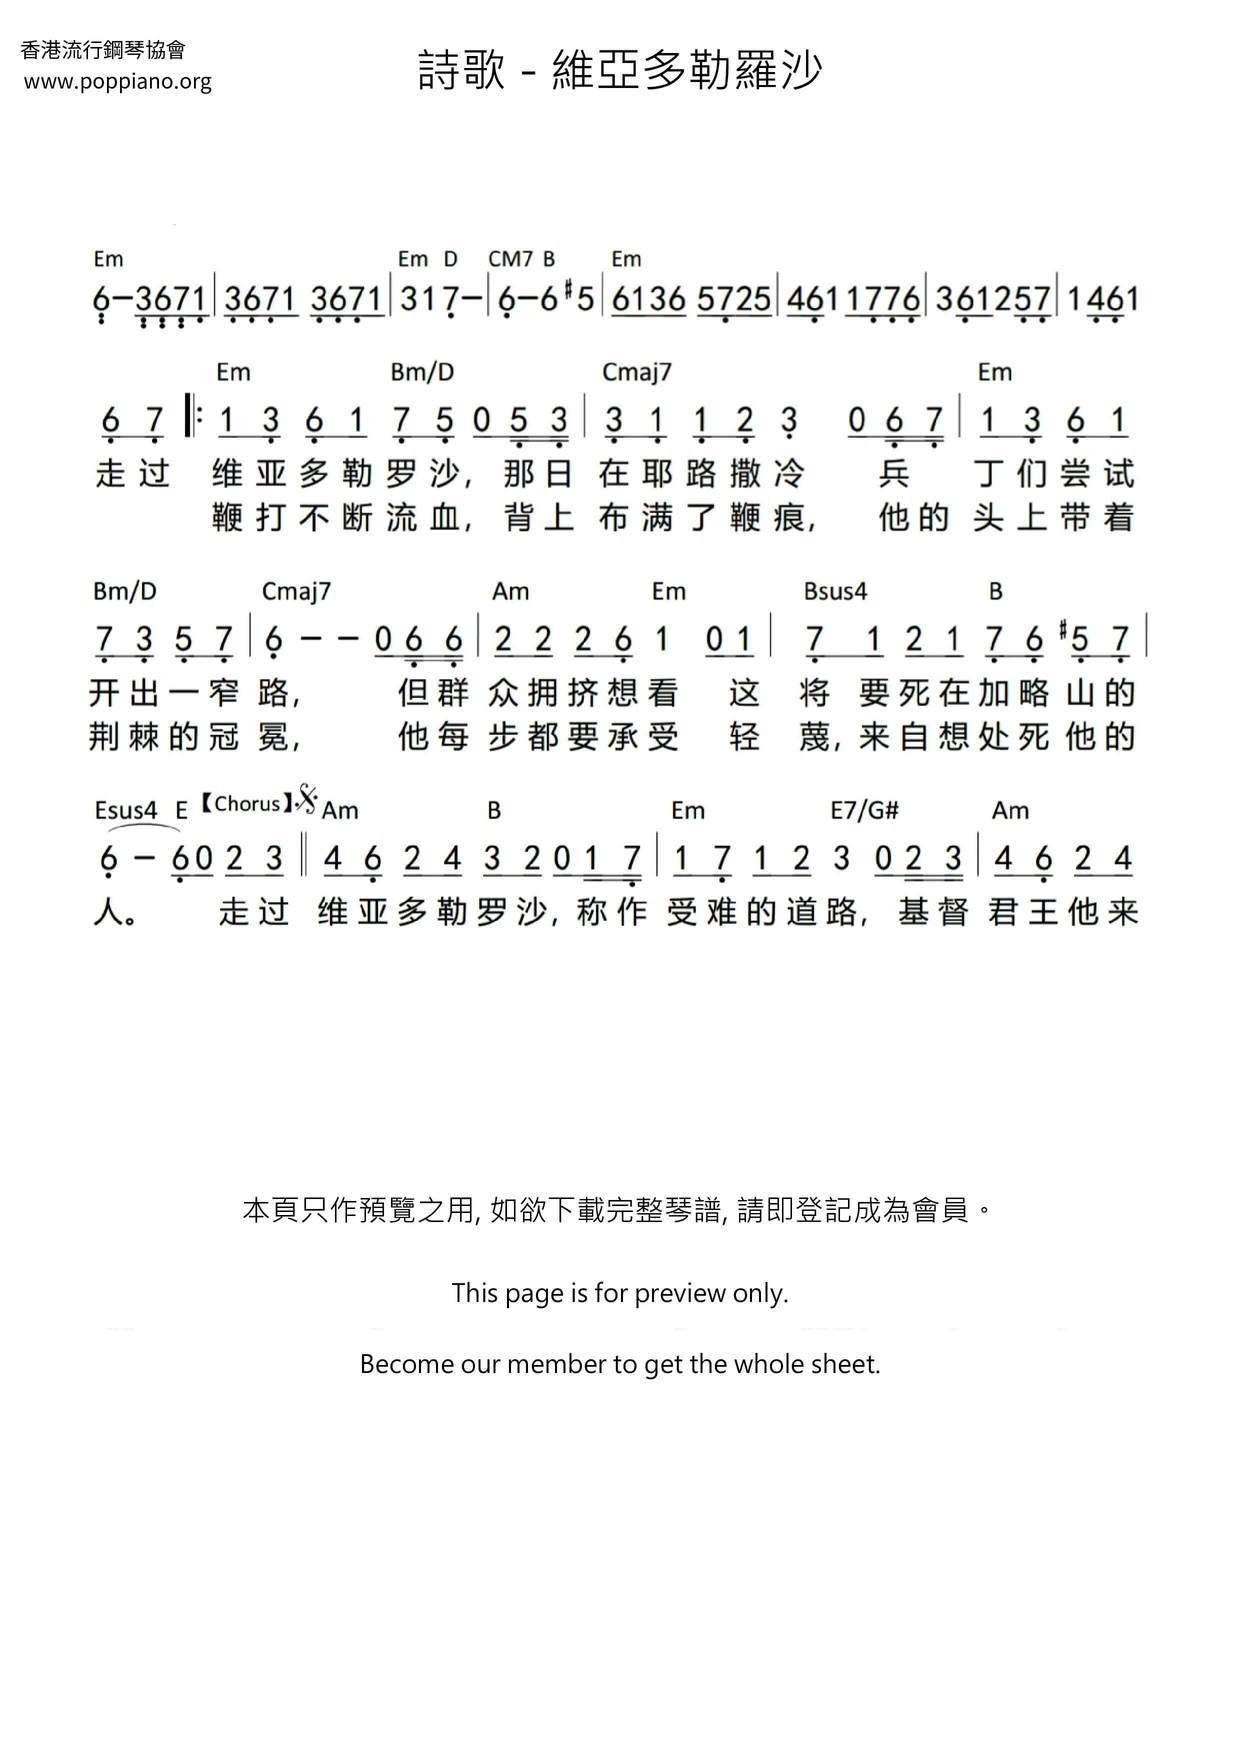 诗歌-维亚多勒罗沙 琴谱/五线谱pdf-香港流行钢琴协会琴谱下载